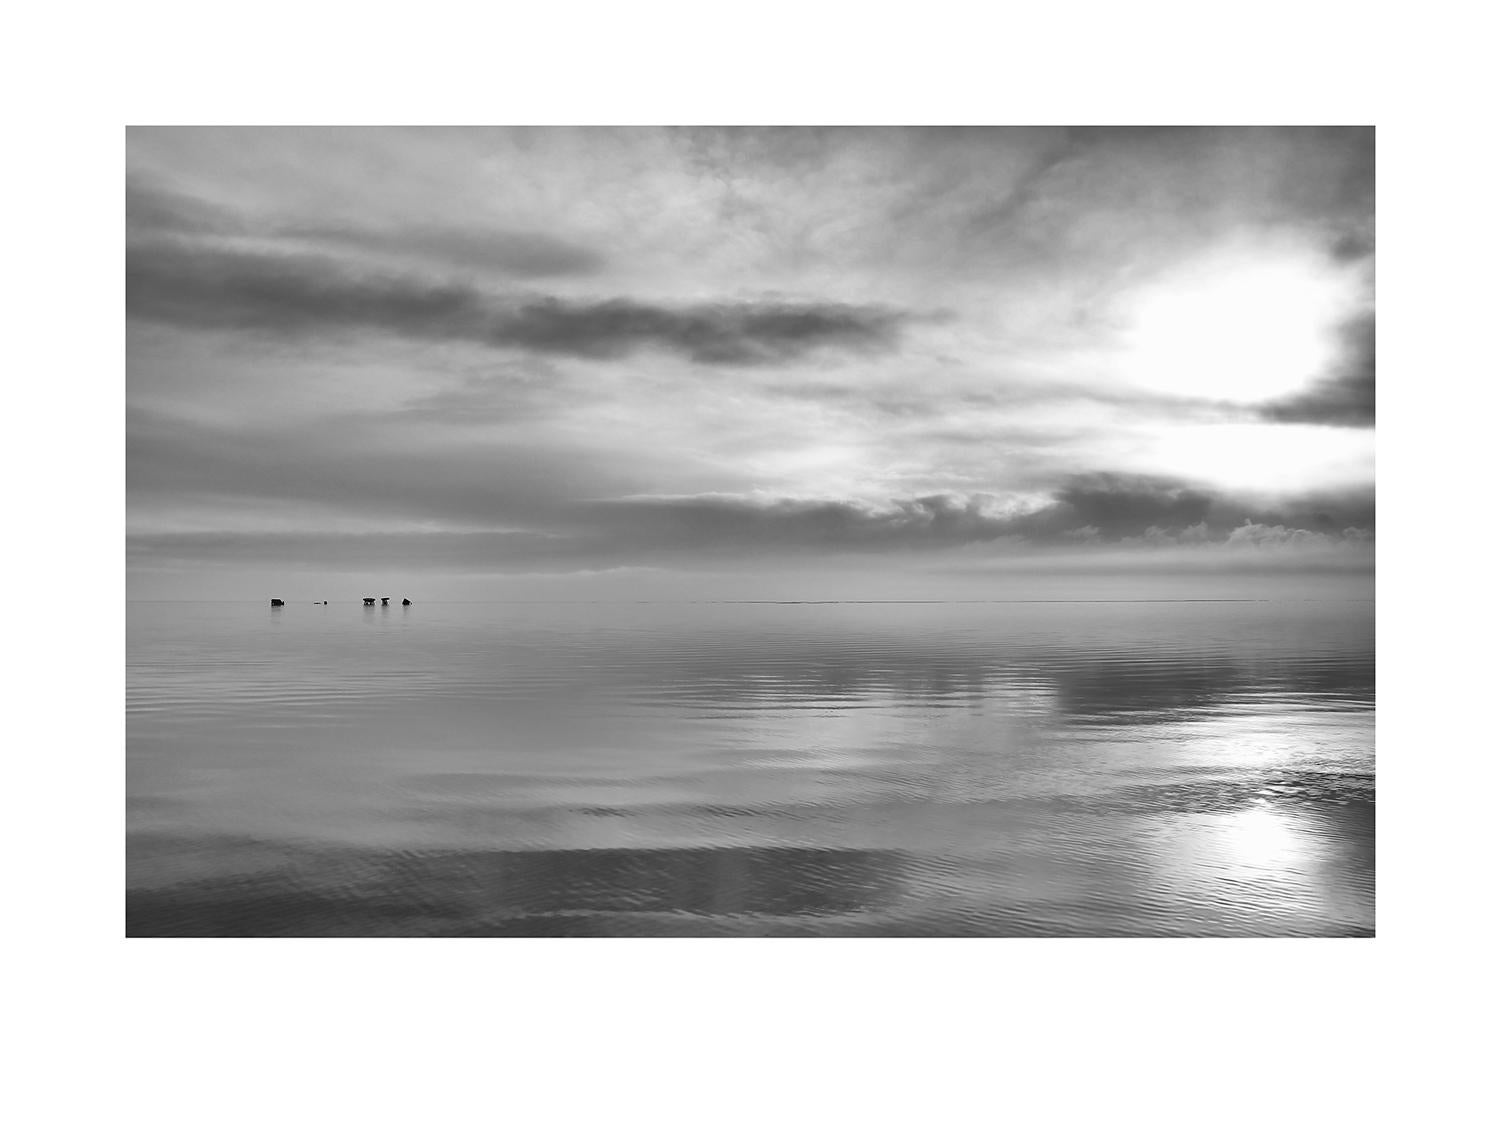 Michael Götze Landscape Photograph - Solitude - contemporary black & white landscape photograph with ocean and clouds